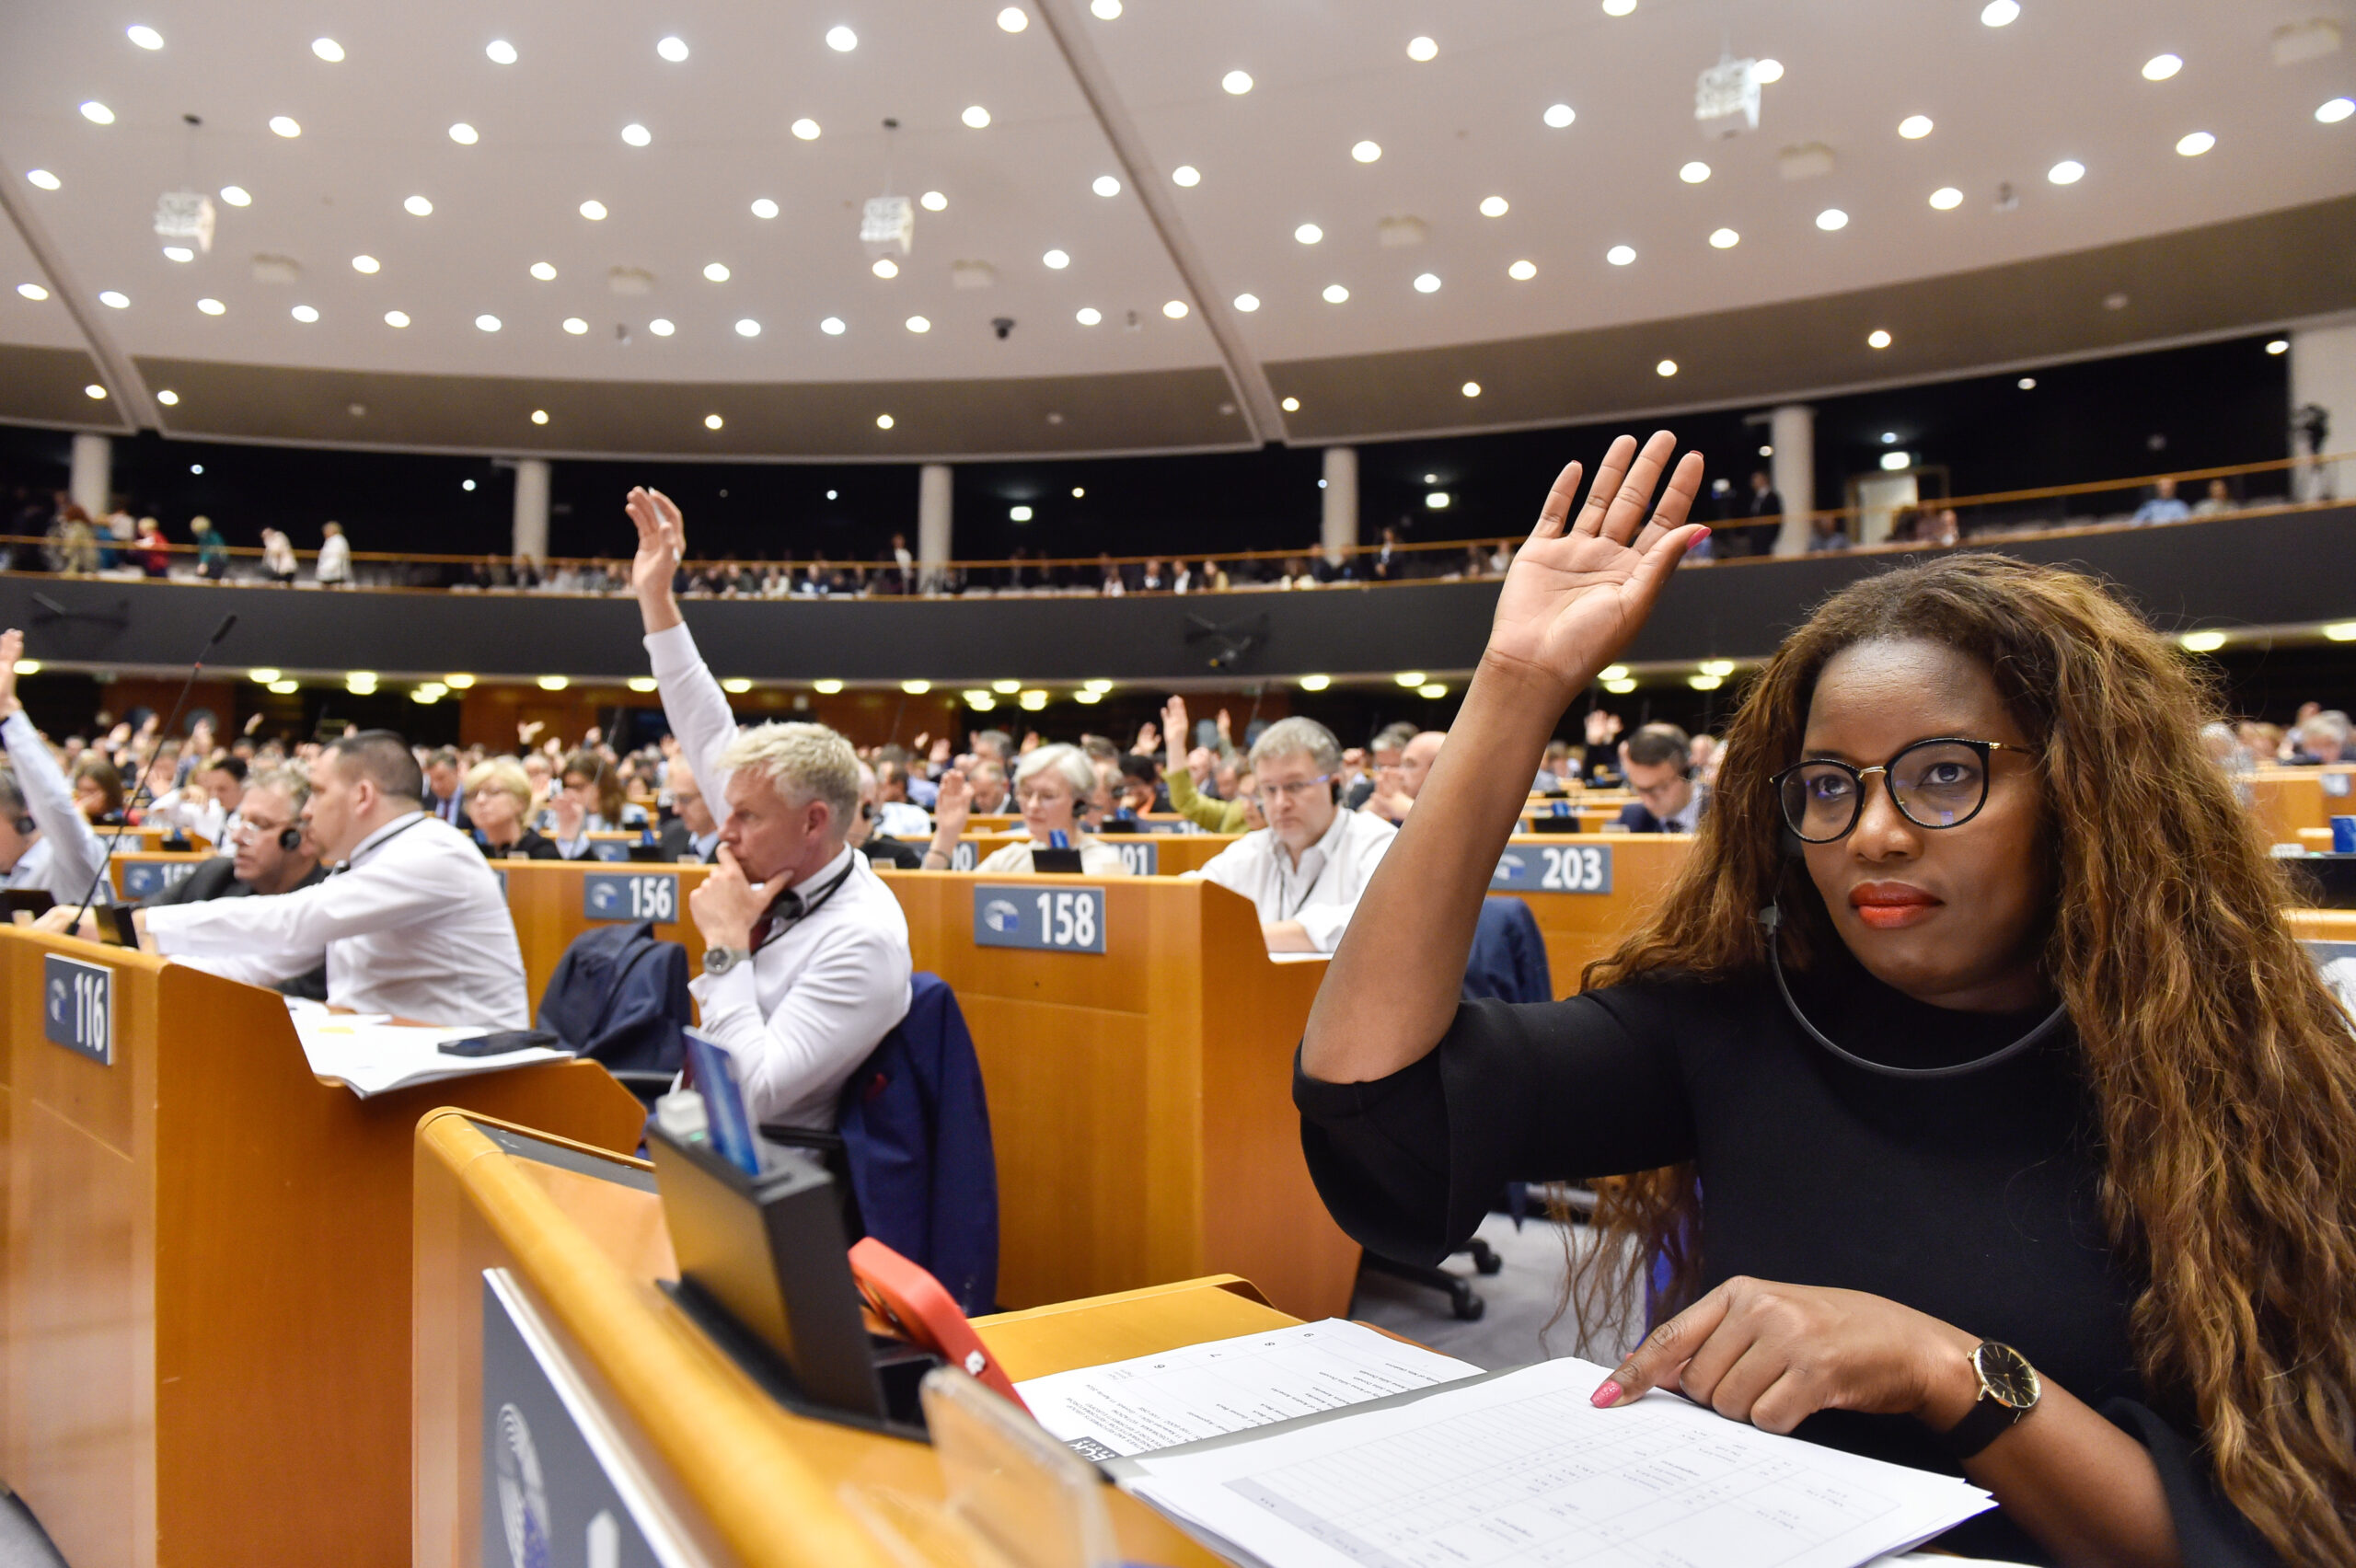 Přečtete si více ze článku Shrnutí: 5 hlavních bodů plenárního zasedání Evropského parlamentu